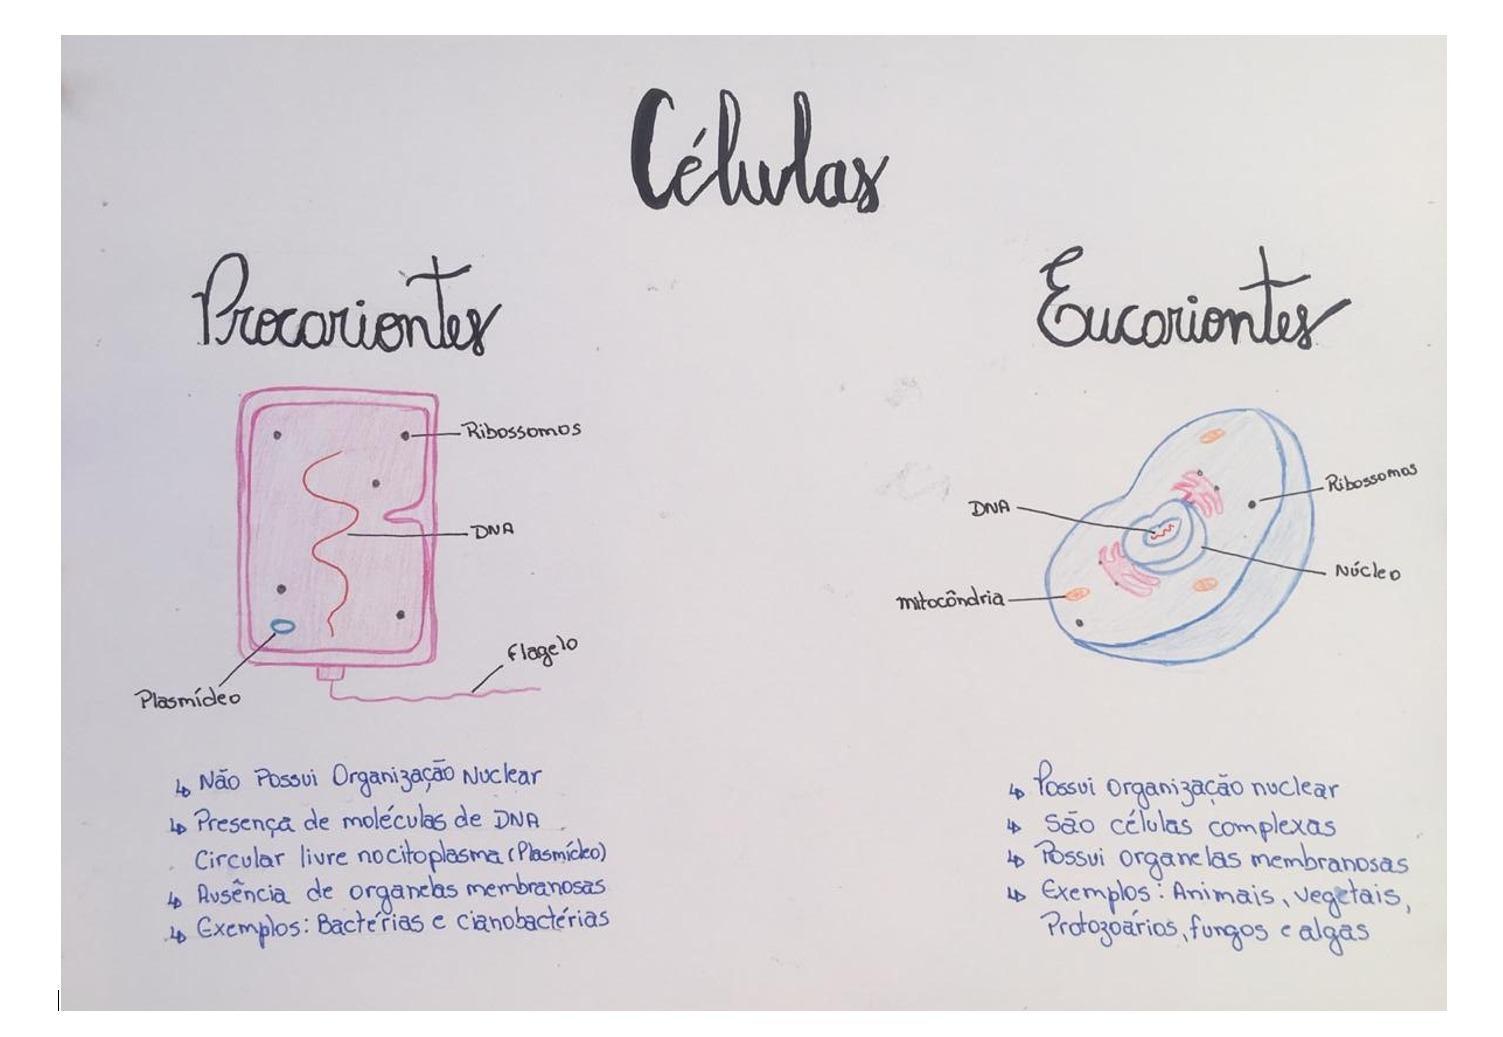 Diferenças entre as Células Eucariontes e Procariotes